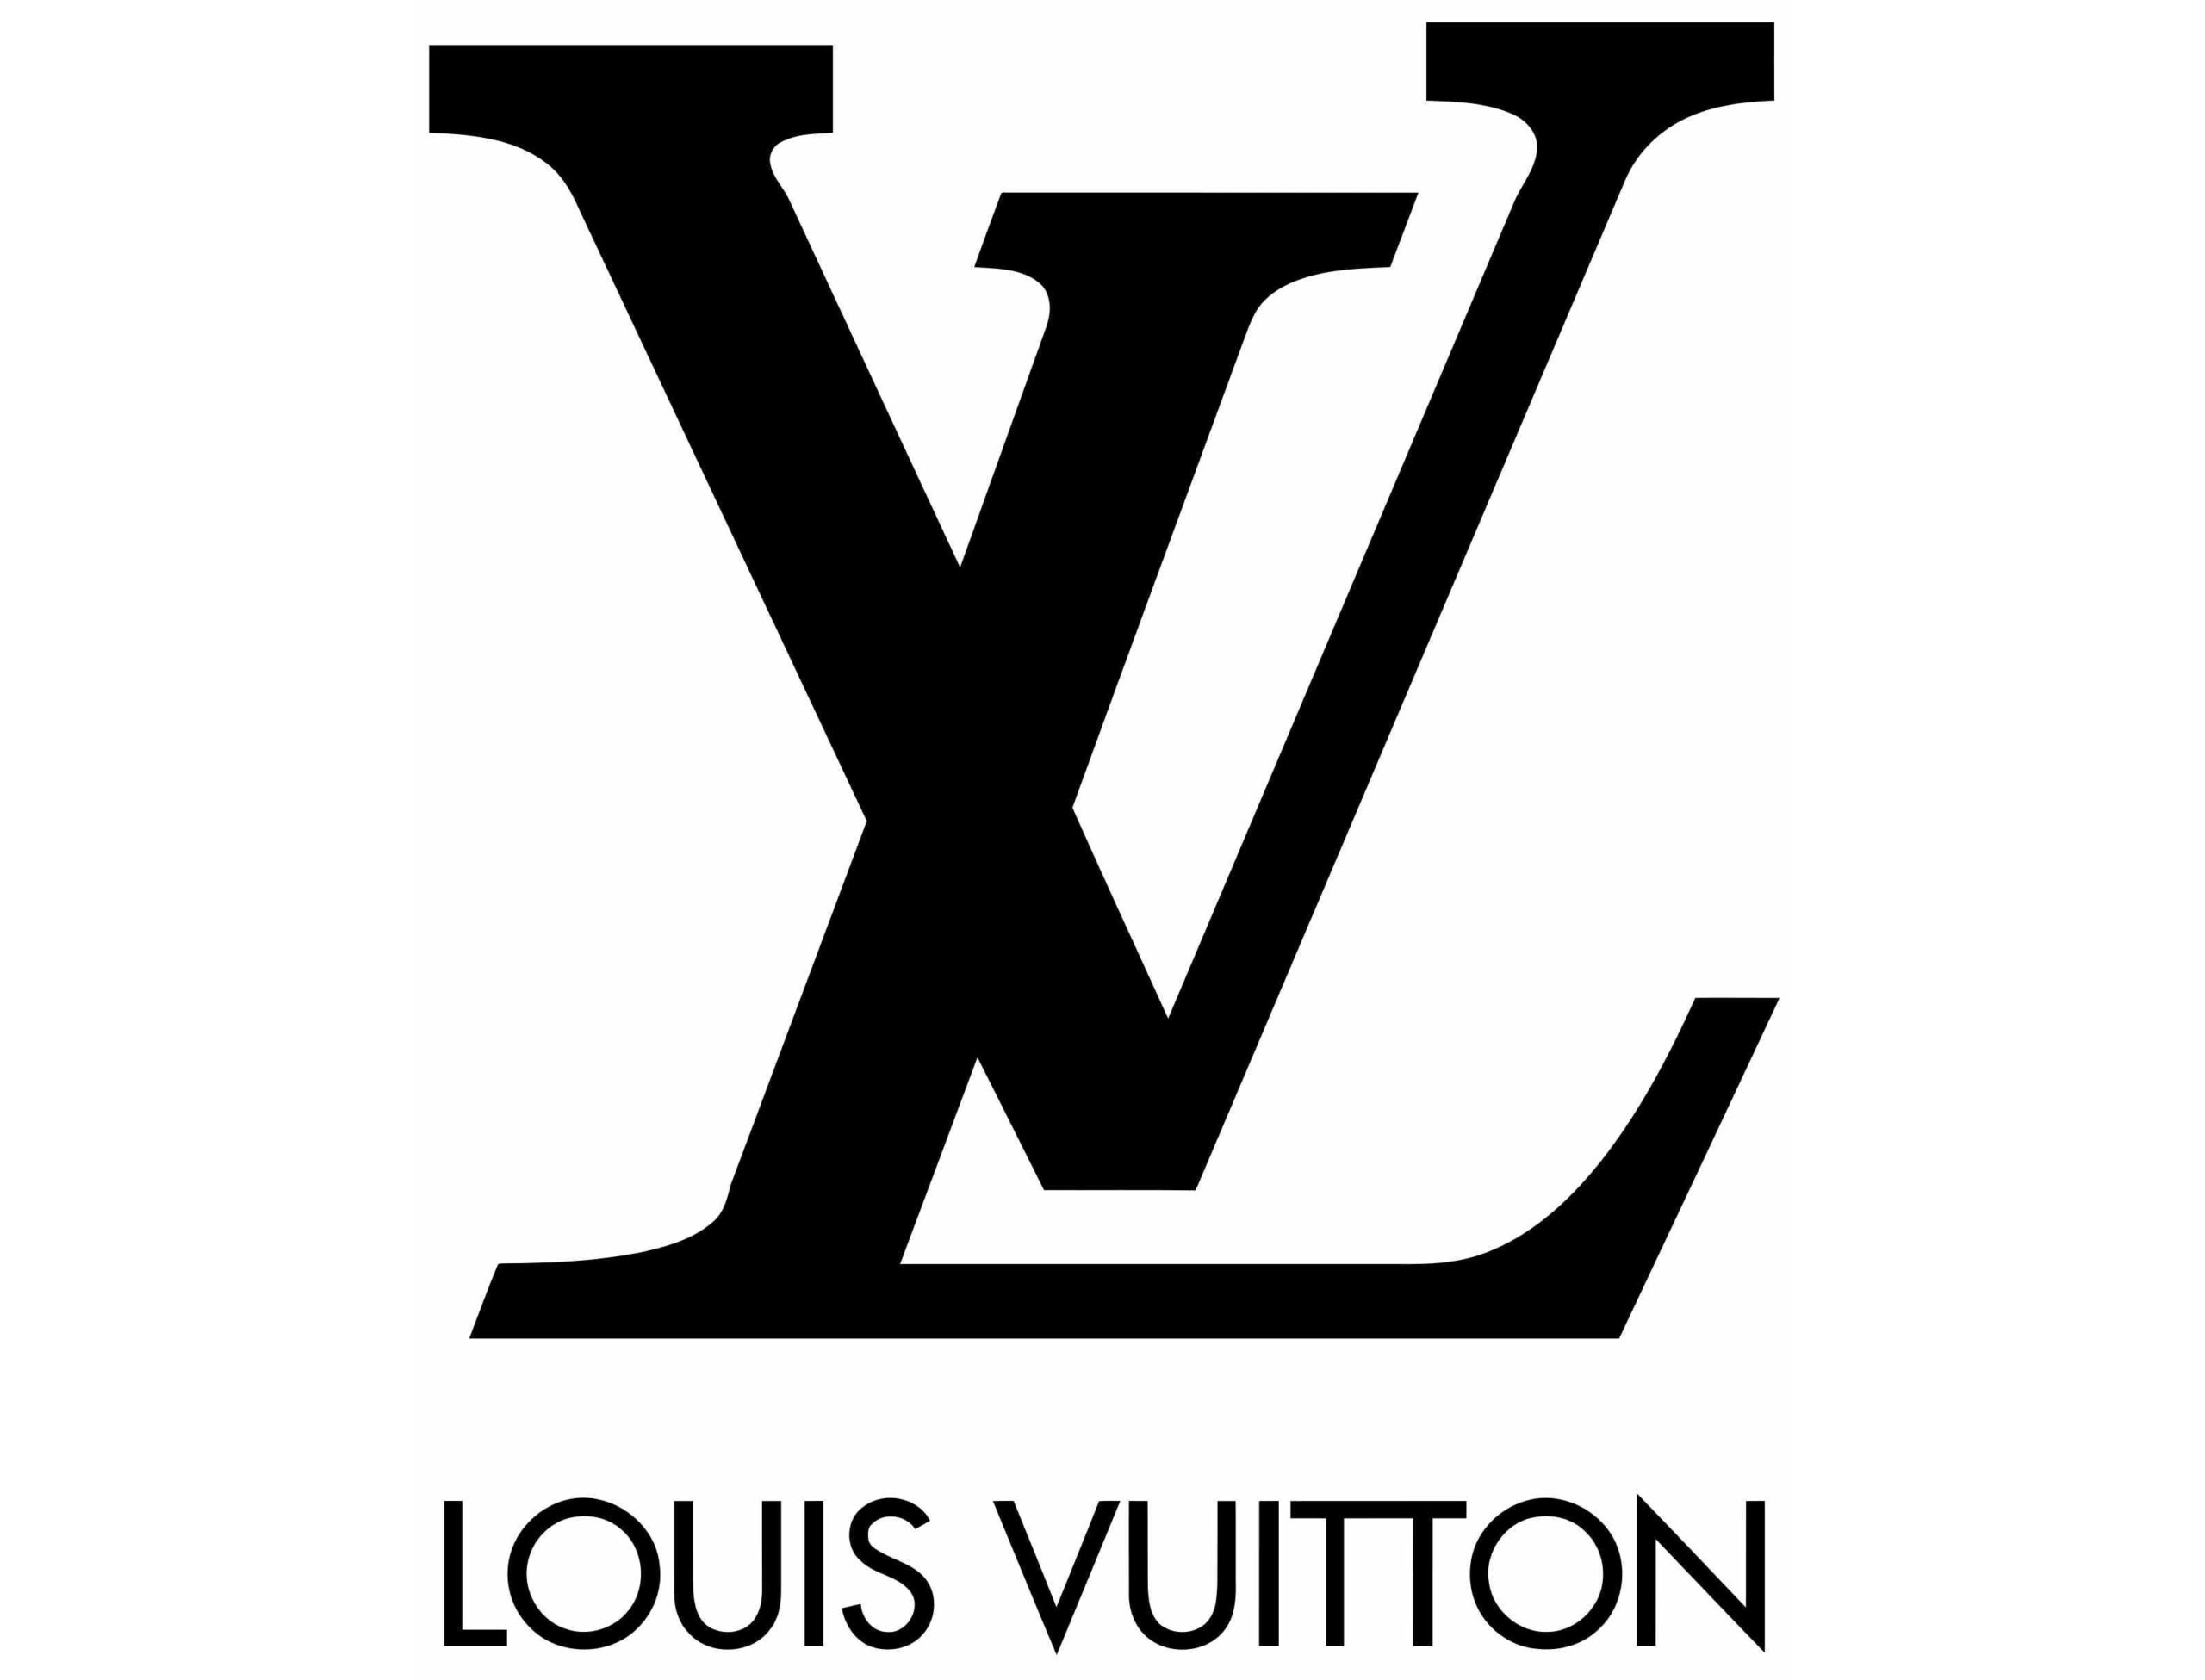 Logo Louis Vuitton : lettres stylisées "LV" sur fond blanc.